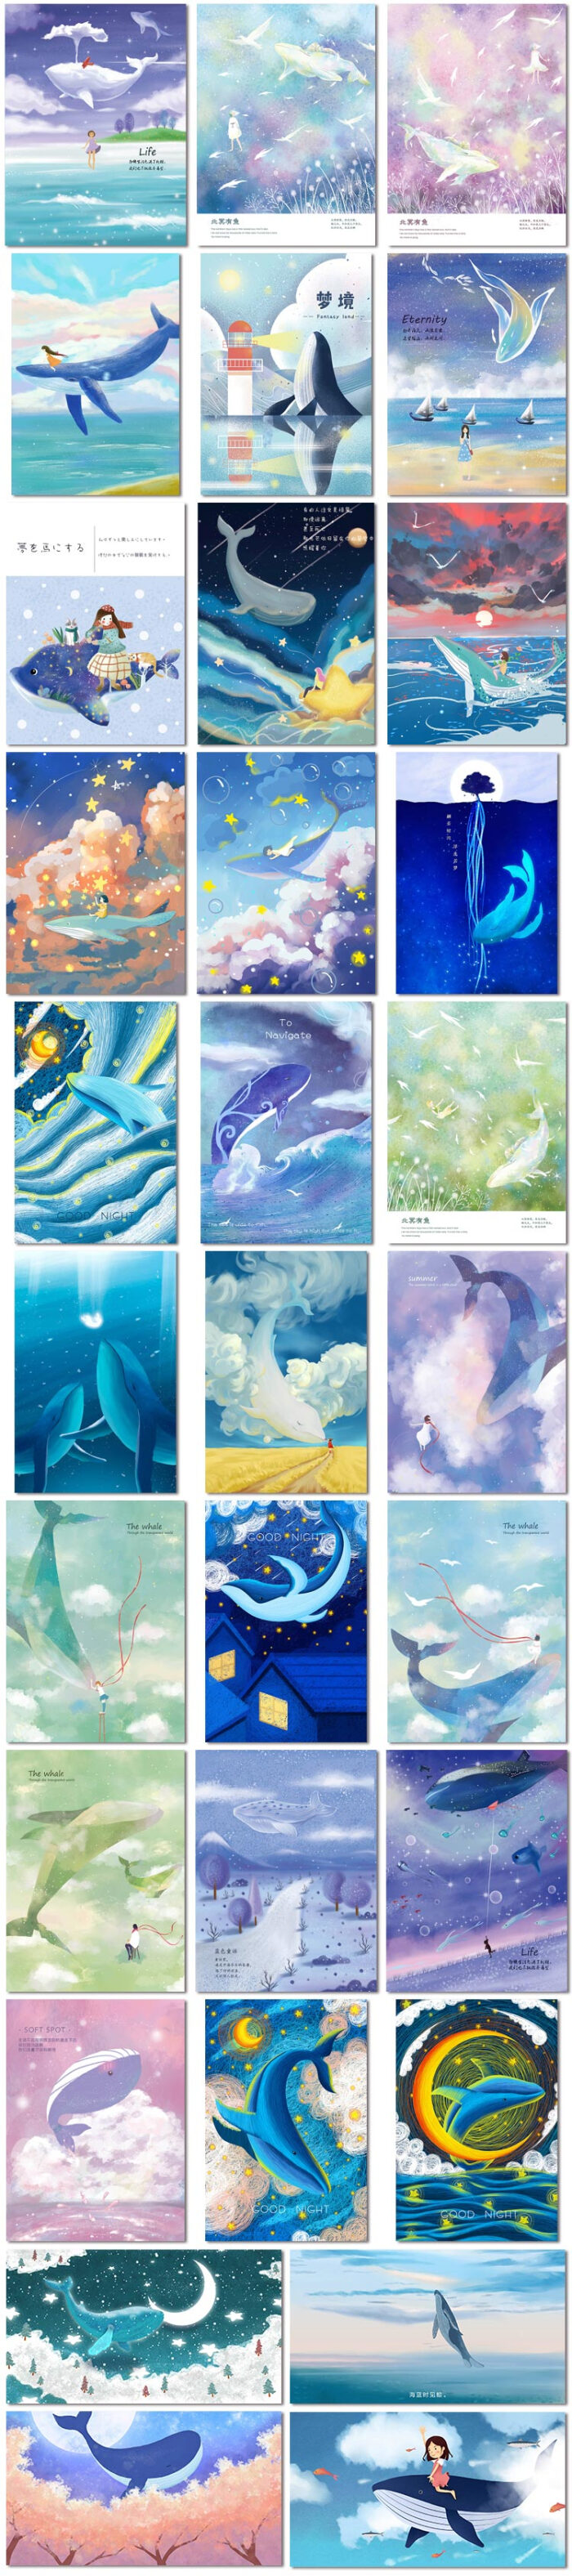 梦幻鲸鱼卡通风景白云清新唯美插画手绘水彩海报psd素材模板设计